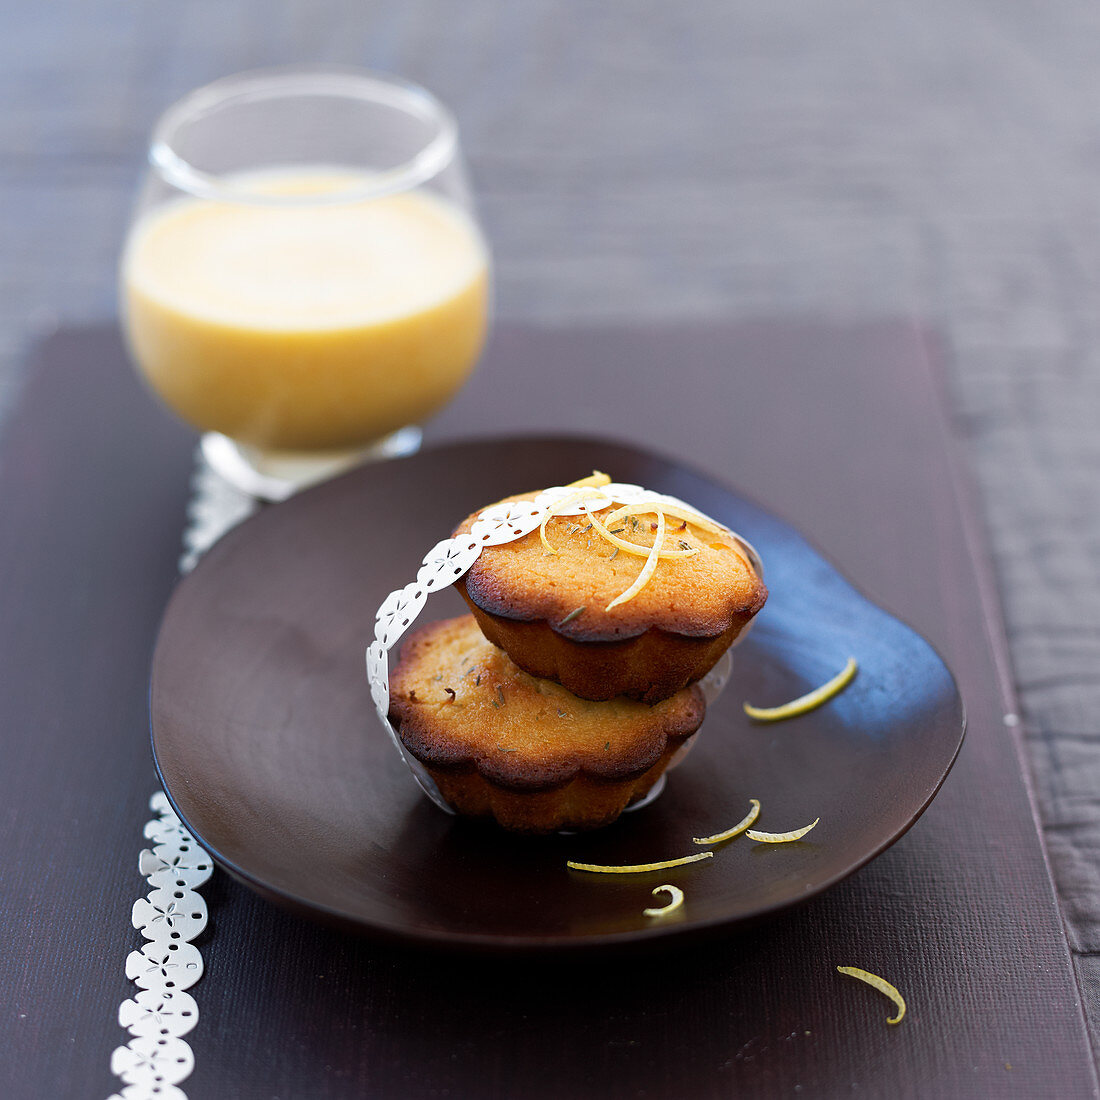 Honig-Zitronenküchlein nach Moelleux-Art mit Mango-Smoothie